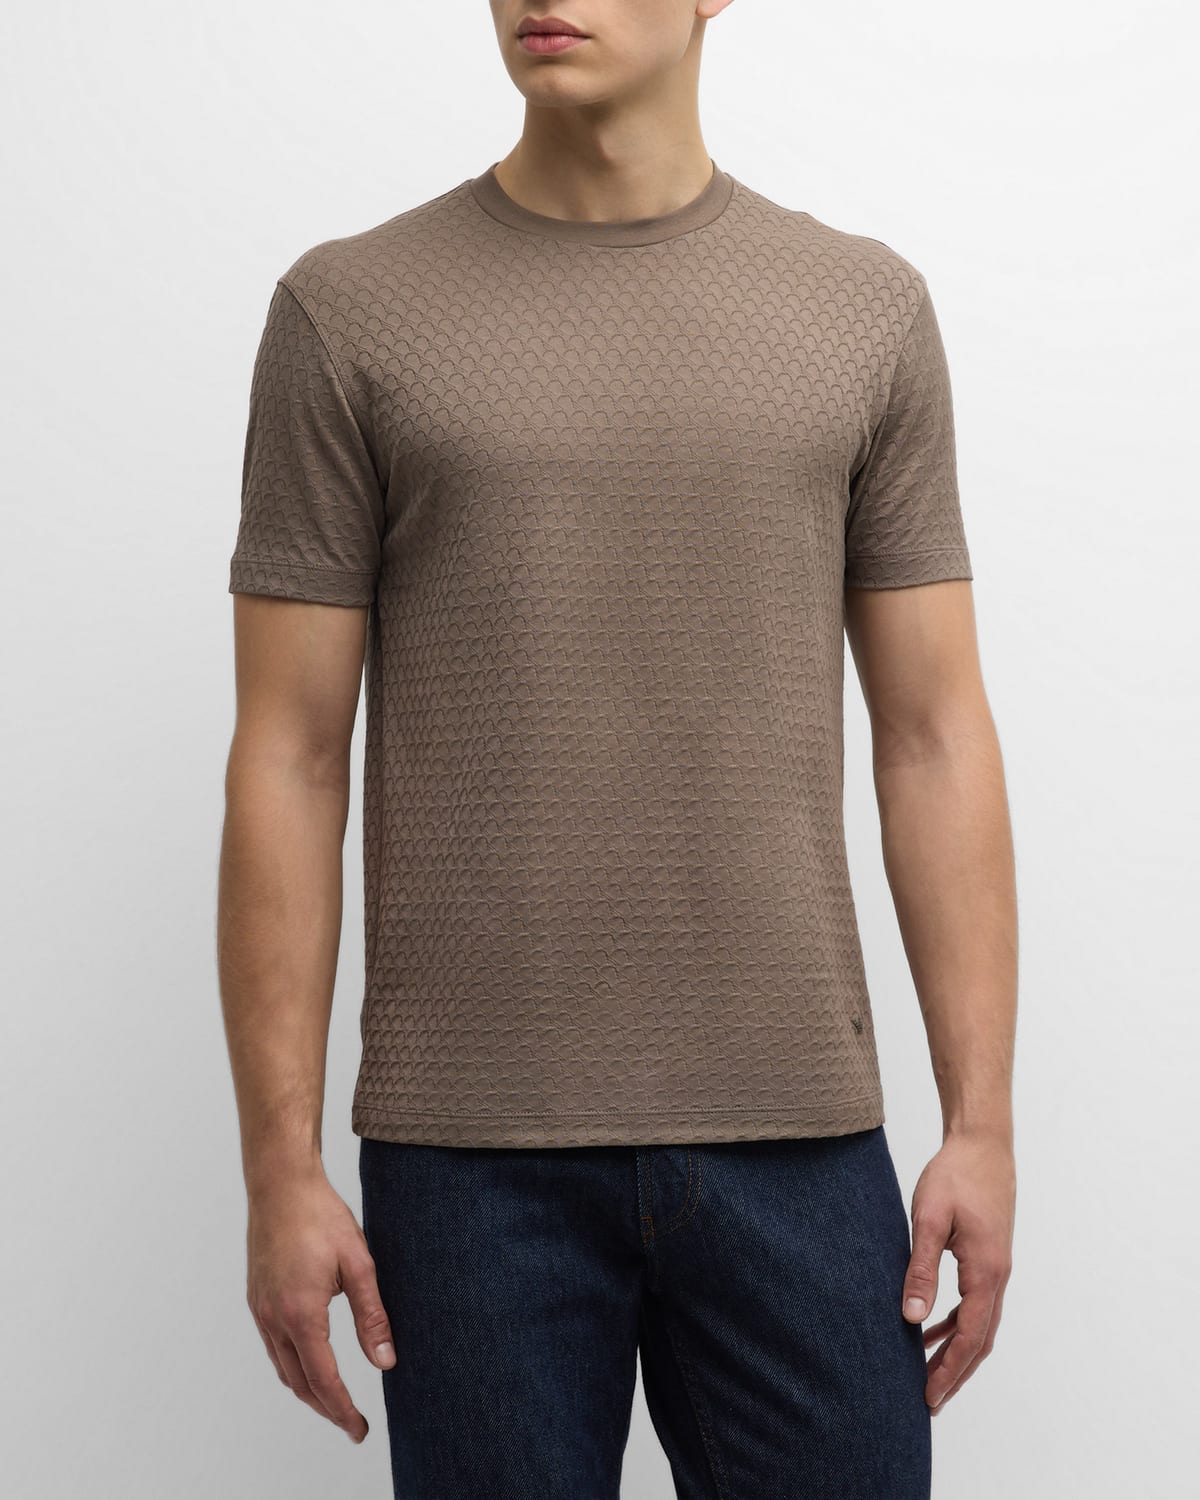 Emporio Armani Men's Scallop-textured Jersey Crewneck T-shirt In Multi